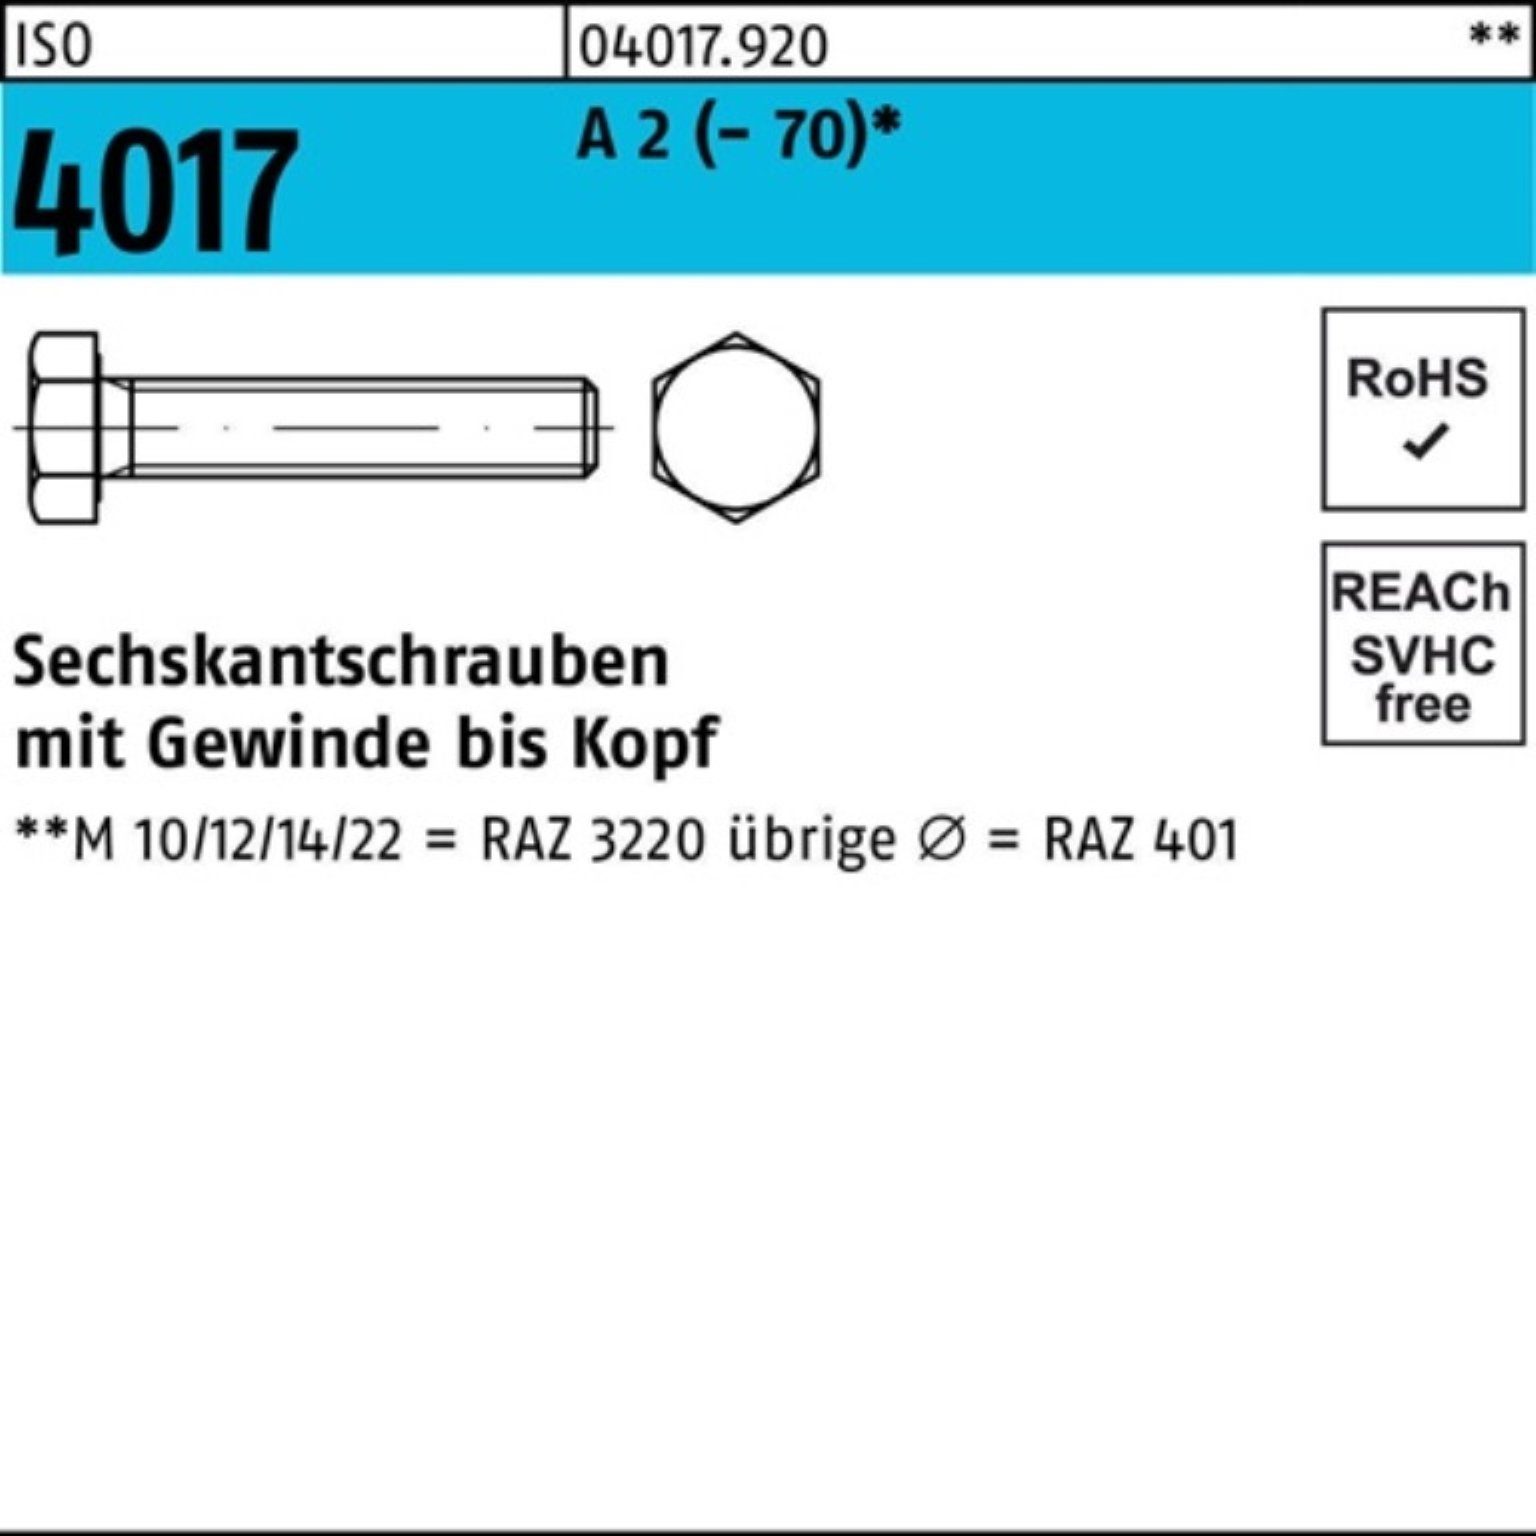 Bufab Sechskantschraube VG (70) Pack 2 Sechskantschraube 4017 200 M8x Stück ISO 20 A 200er